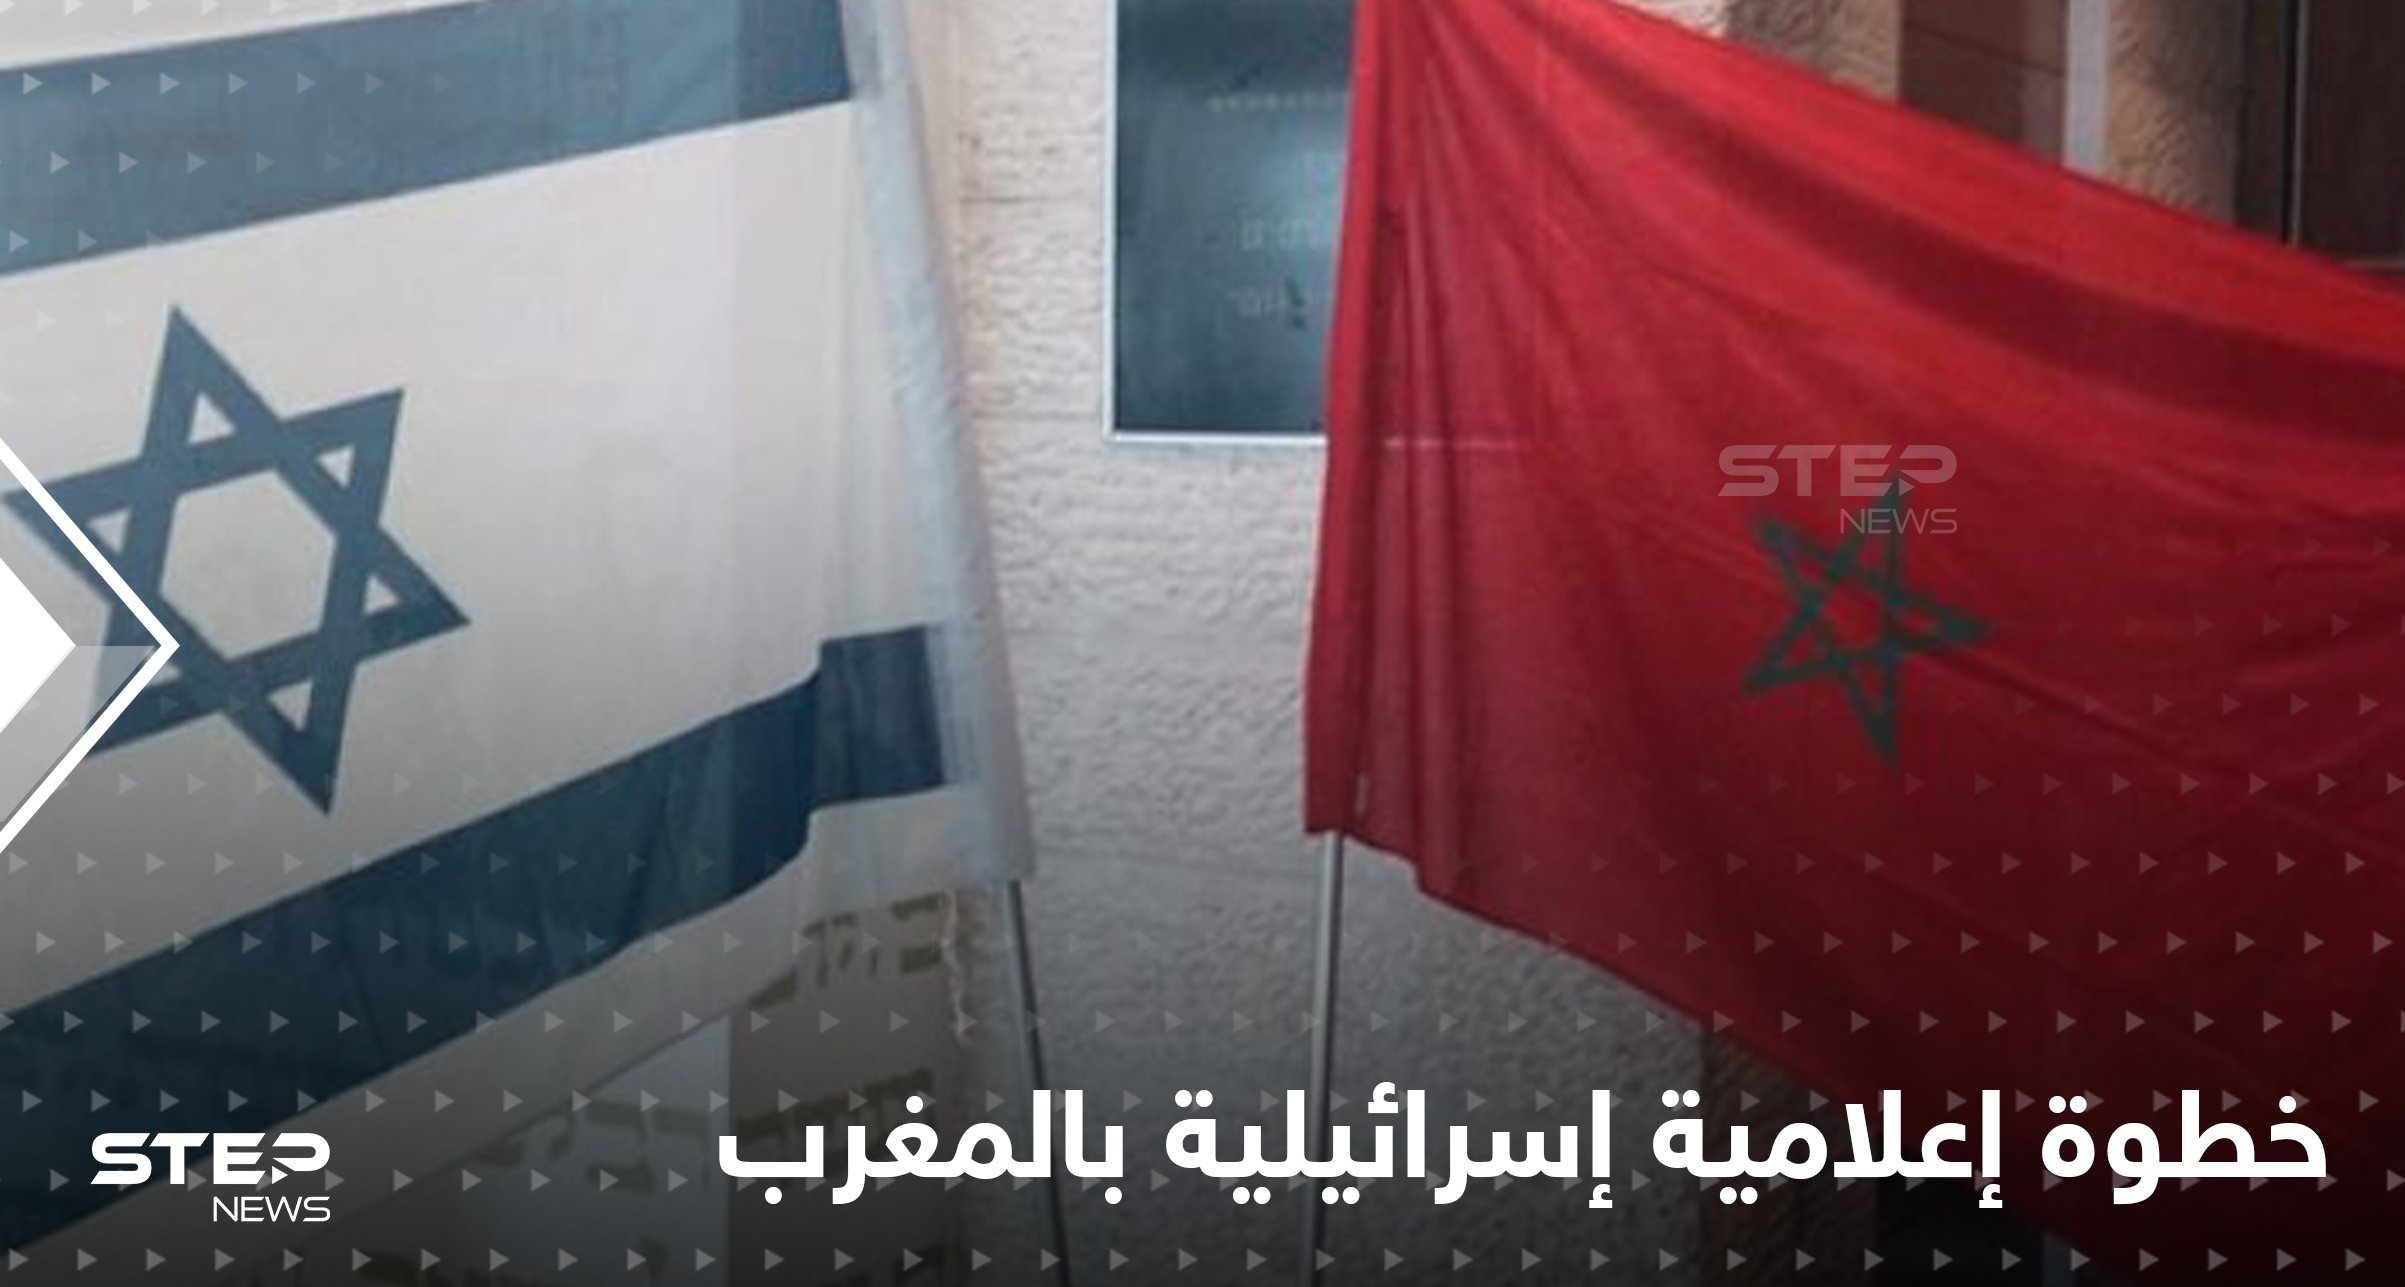 وسيلة إعلام إسرائيلية تتوجه للمغرب وتقوم بخطوة غير مسبوقة